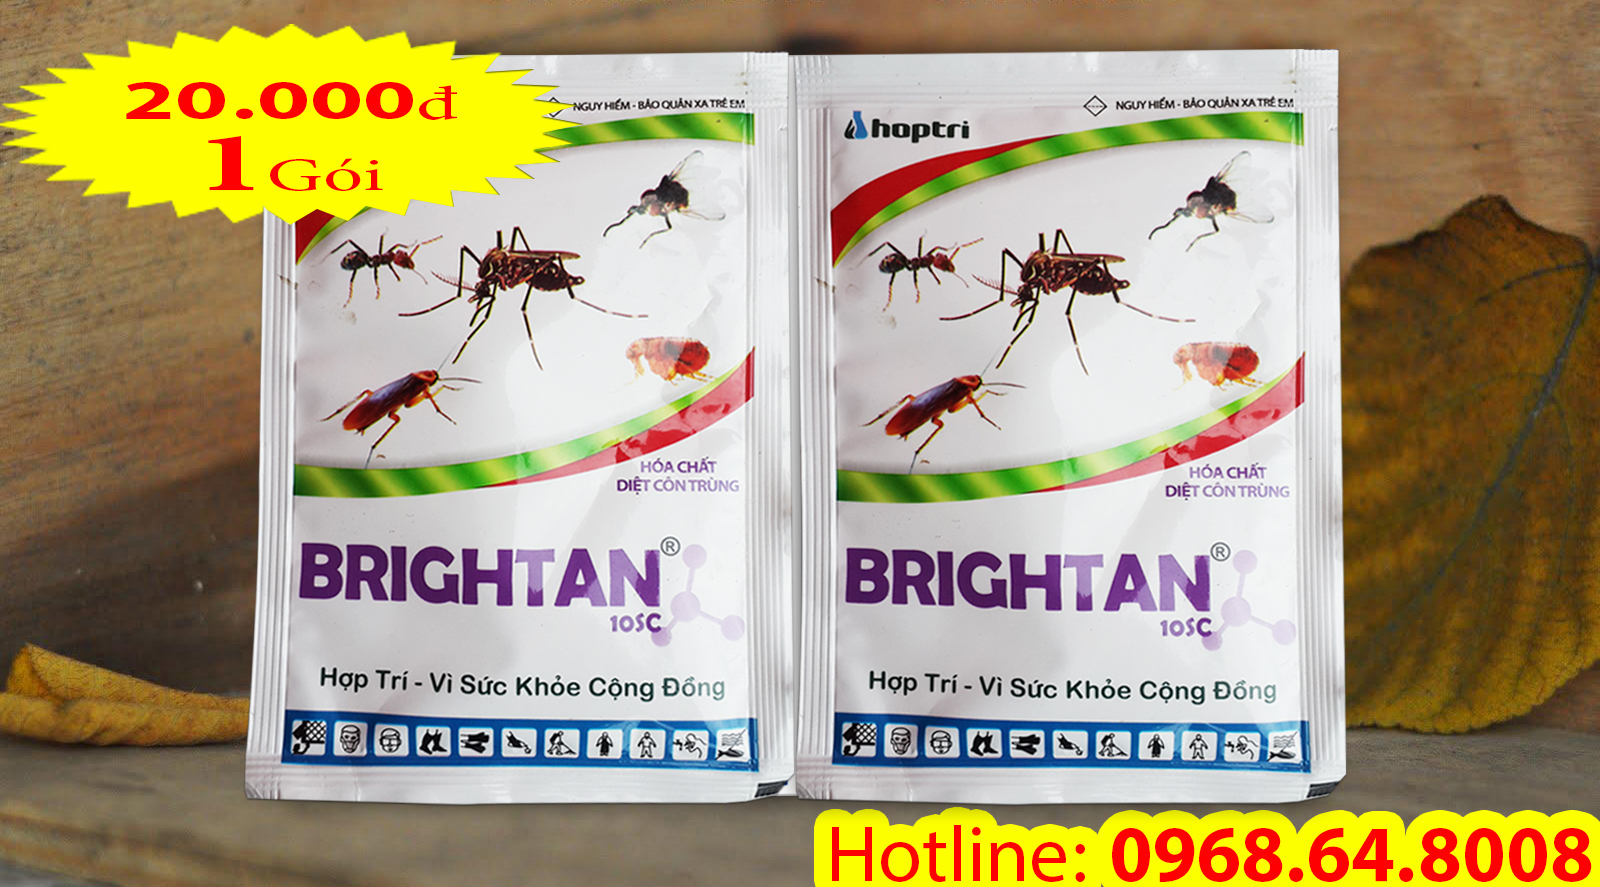 Brightan 10SC (10ml) - (HOCKLEY- ANH QUỐC) - Thuốc diệt côn trùng, muỗi, gián, ruồi, kiến, bọ chét...